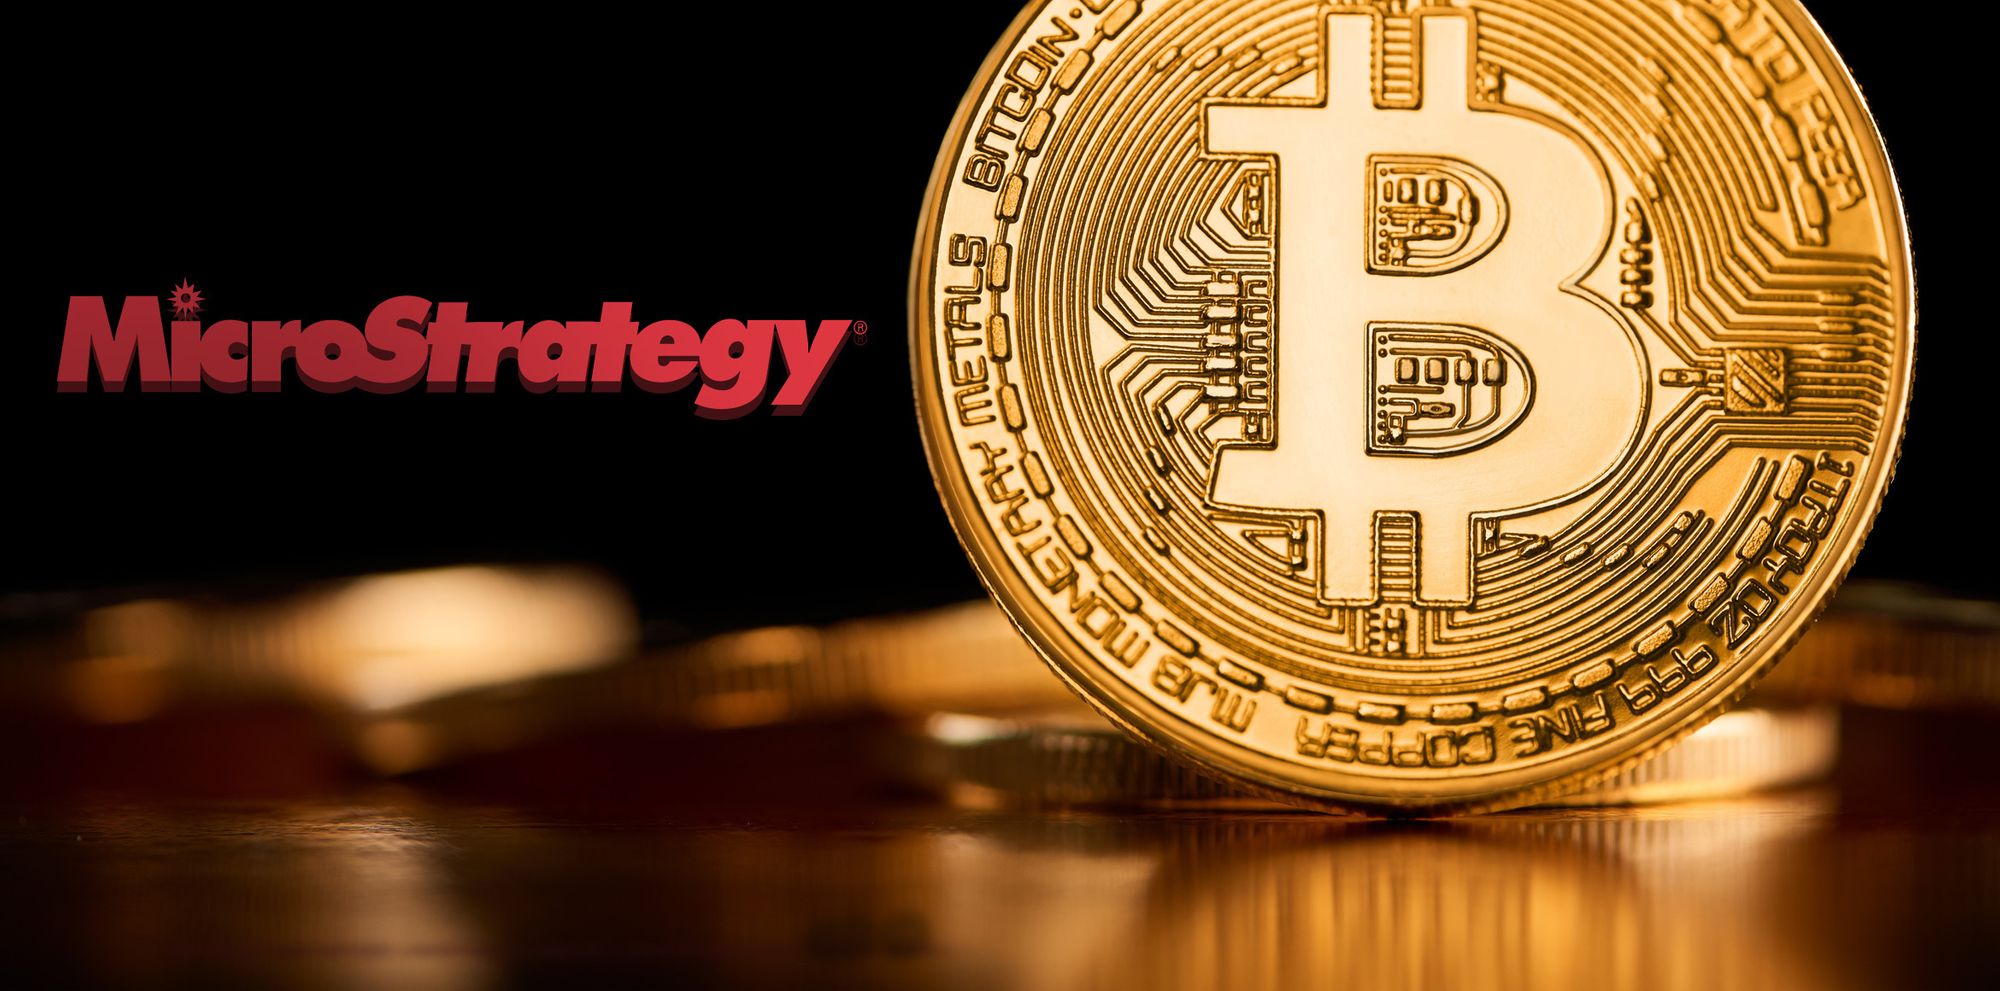 microstrategy, düşen piyasaya rağmen bitcoin stratejisinden vazgeçmiyor!